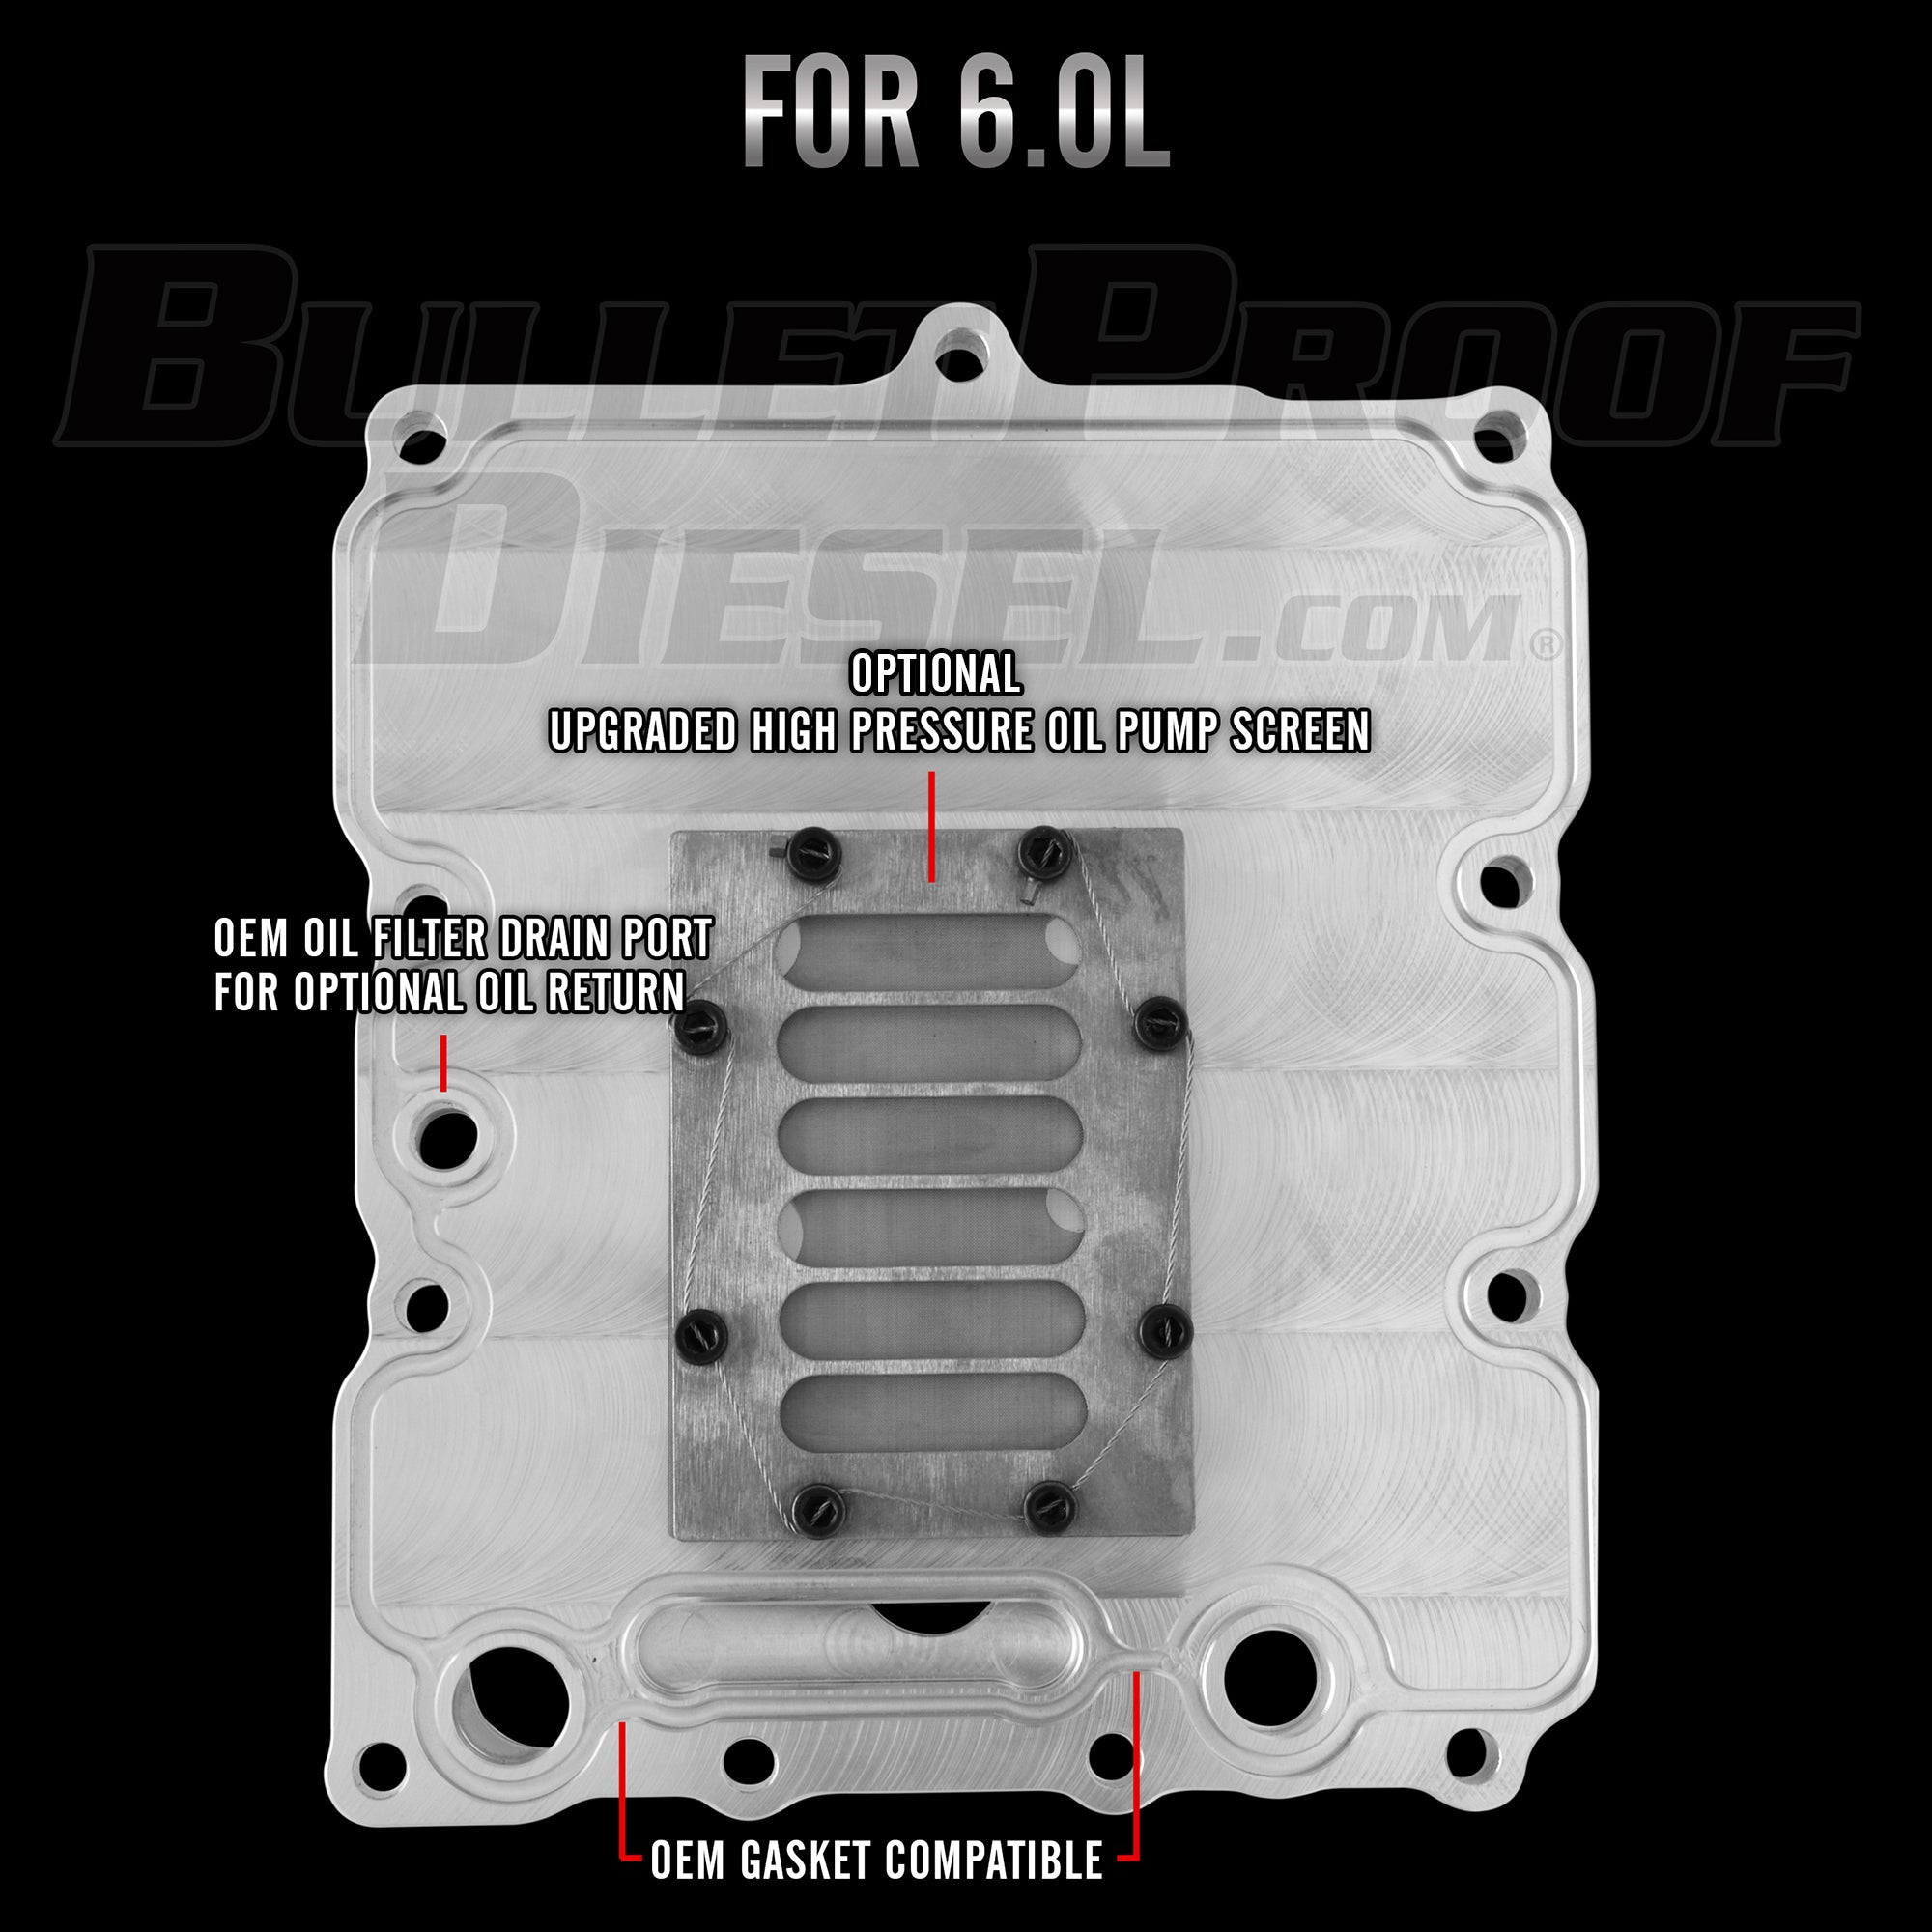 Bullet Proof Diesel 6.0L Oil Cooler Delete Adapter